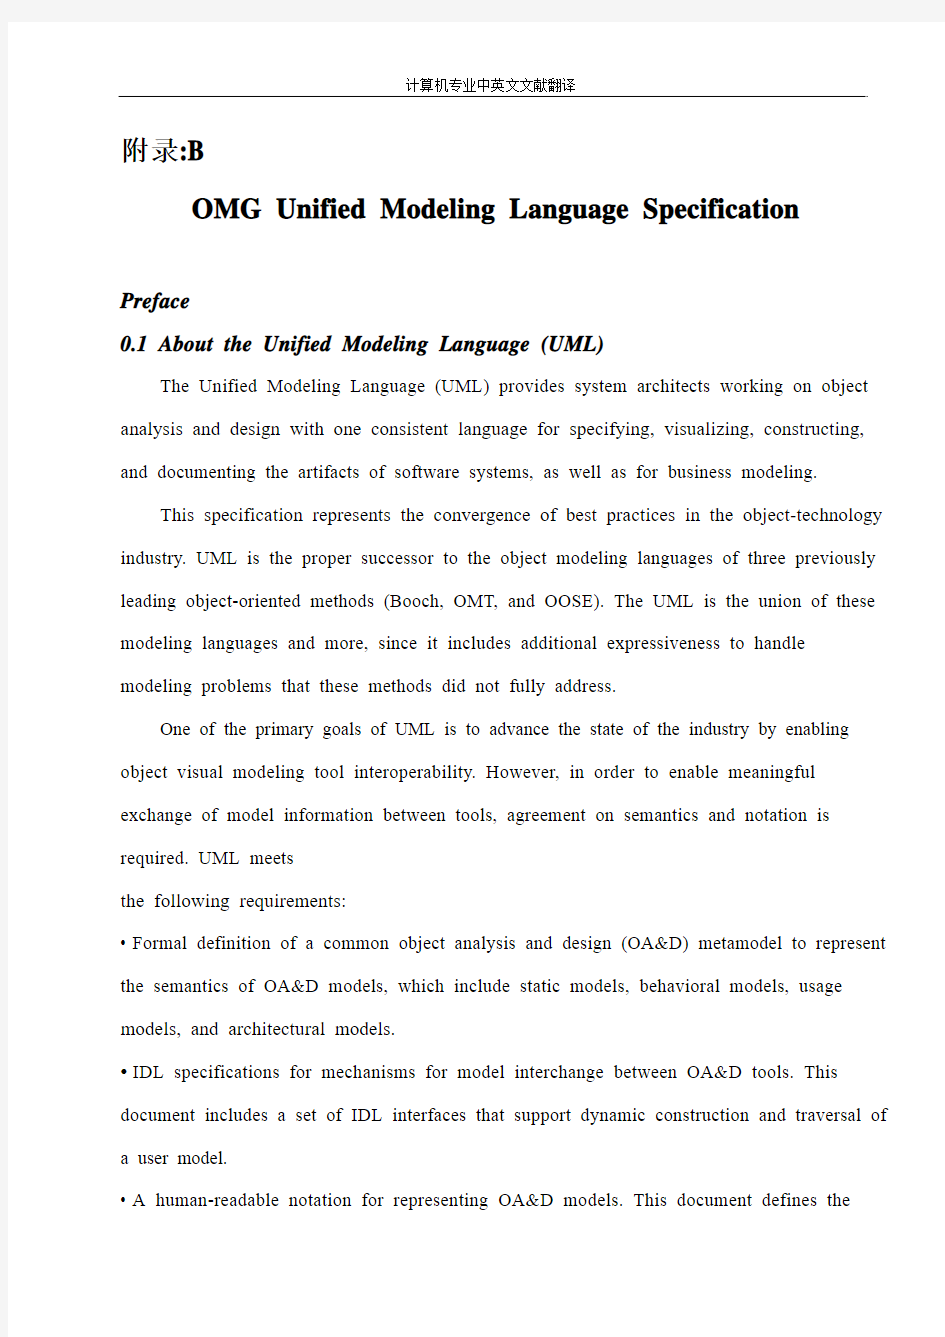 【计算机专业文献翻译】OMG统一建模语言规范